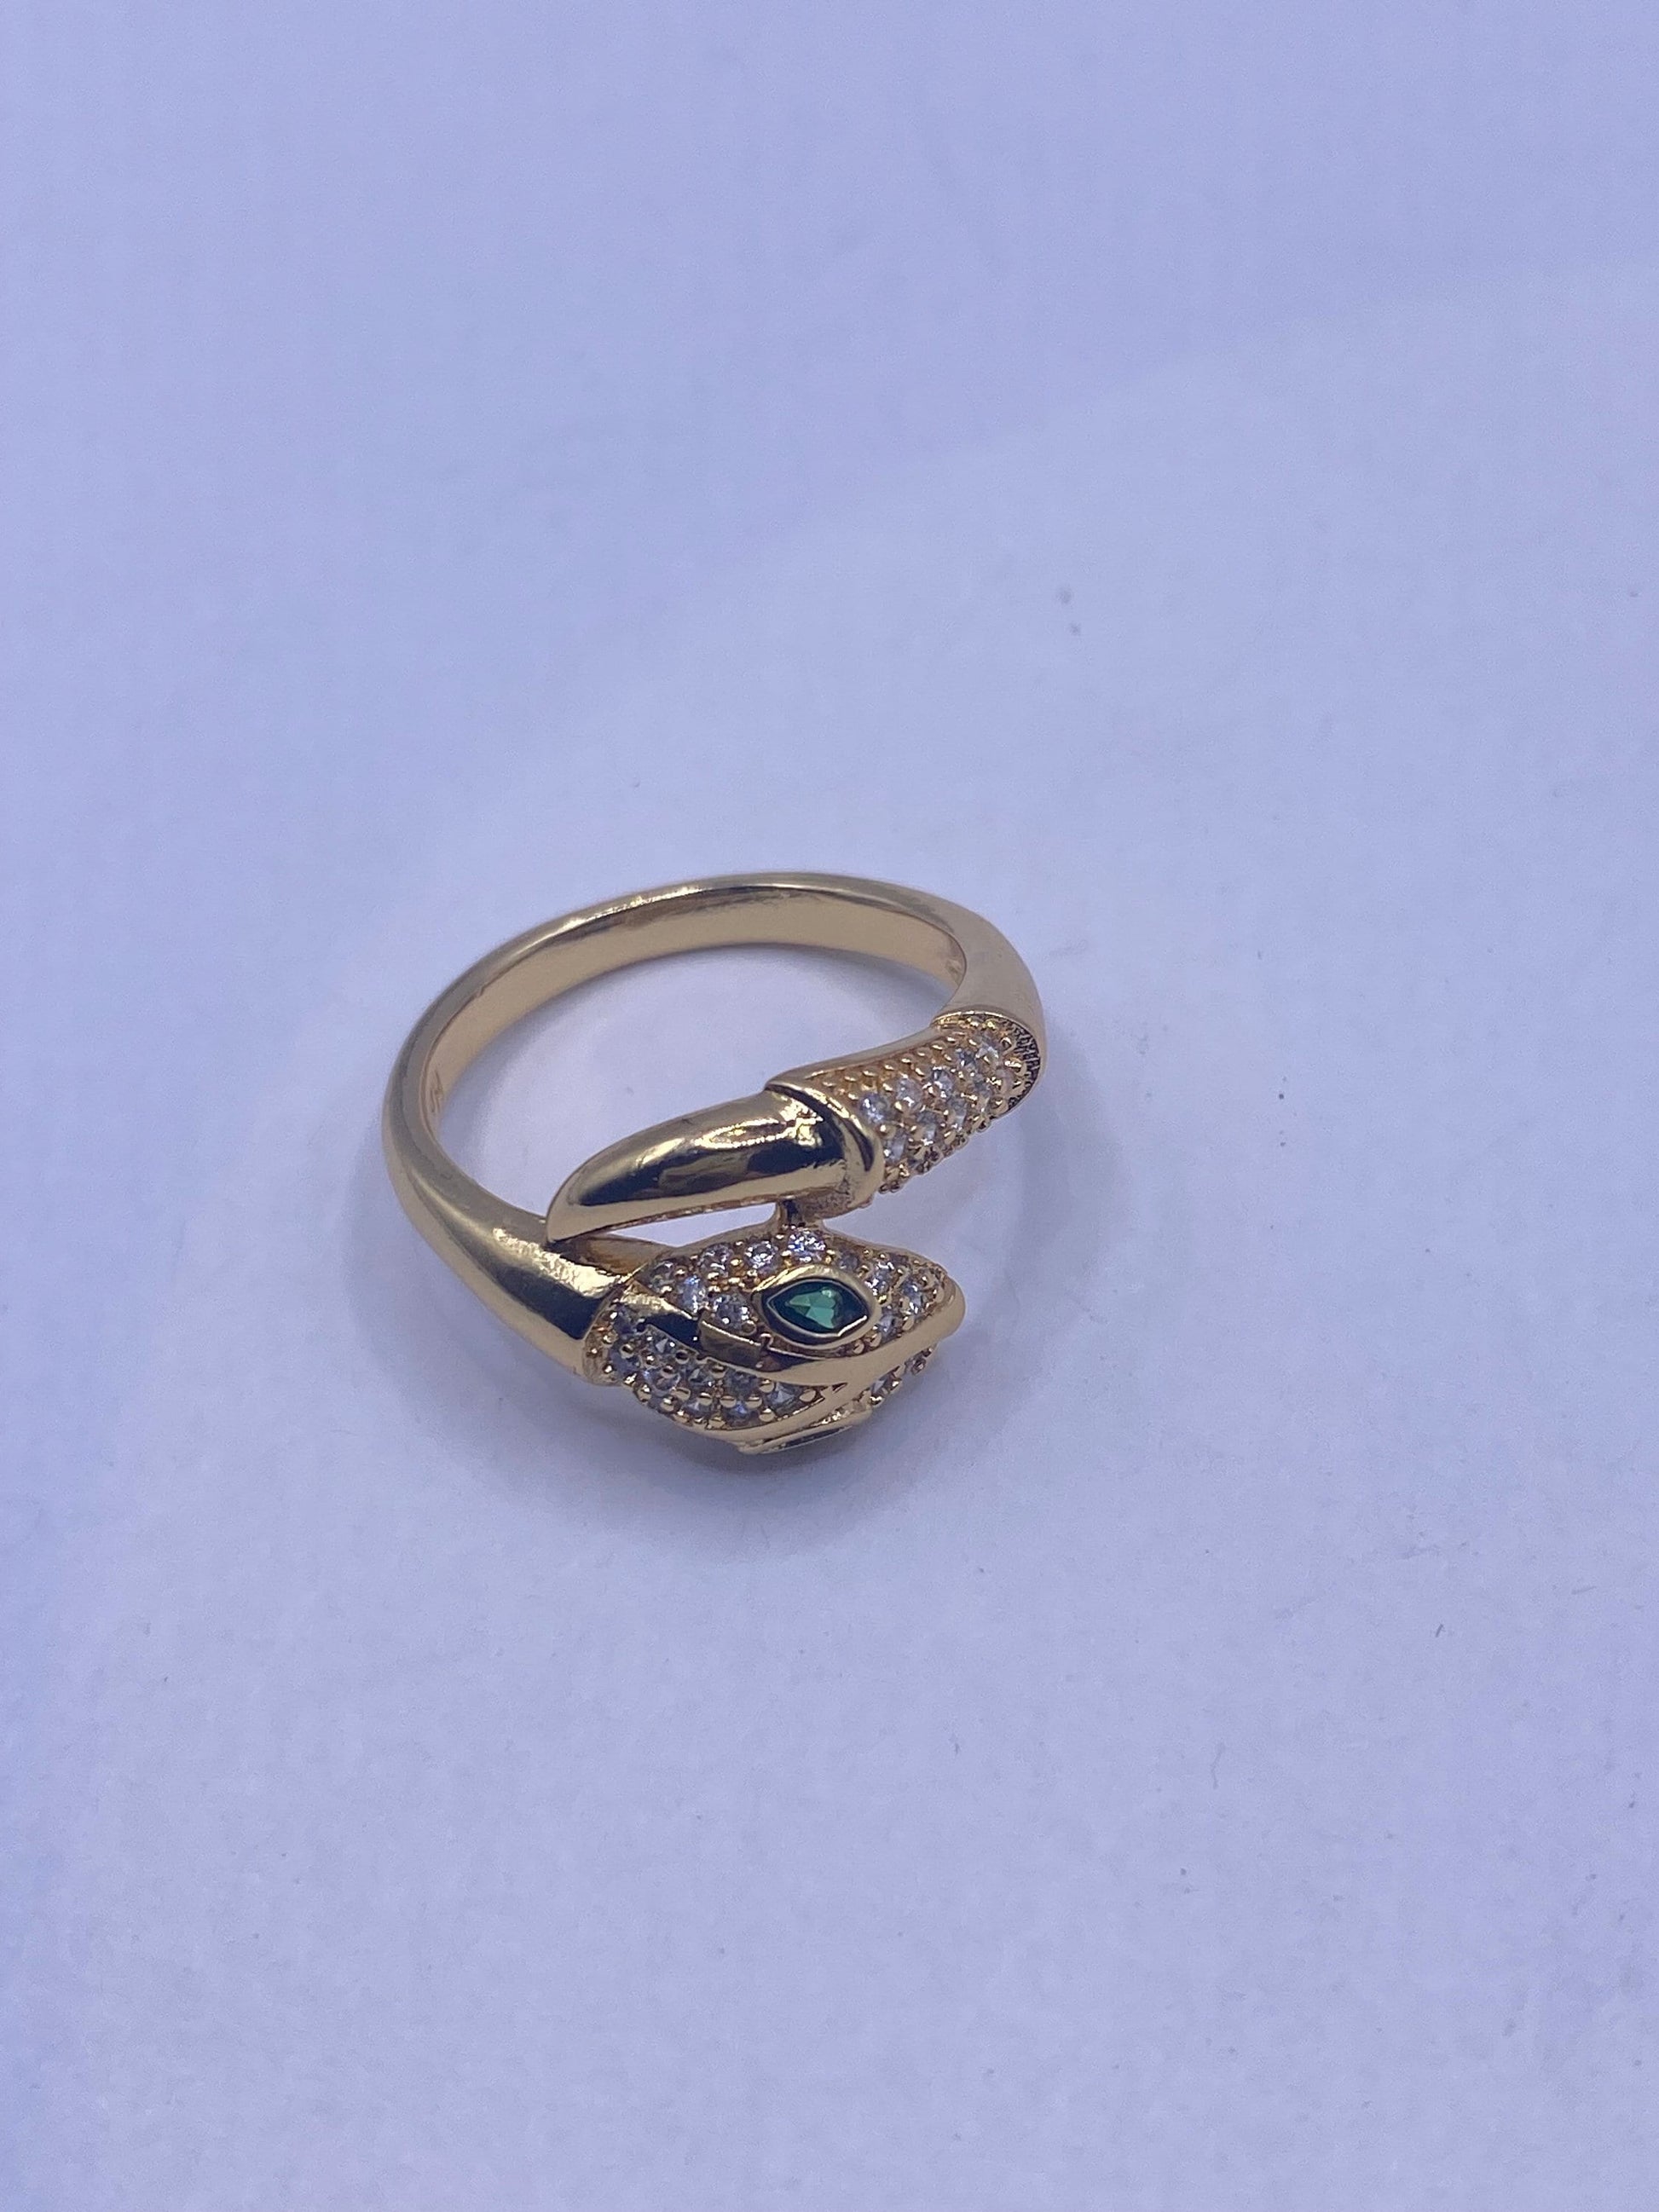 Vintage Snake Ring Gold Filled Crystal Cocktail Ring